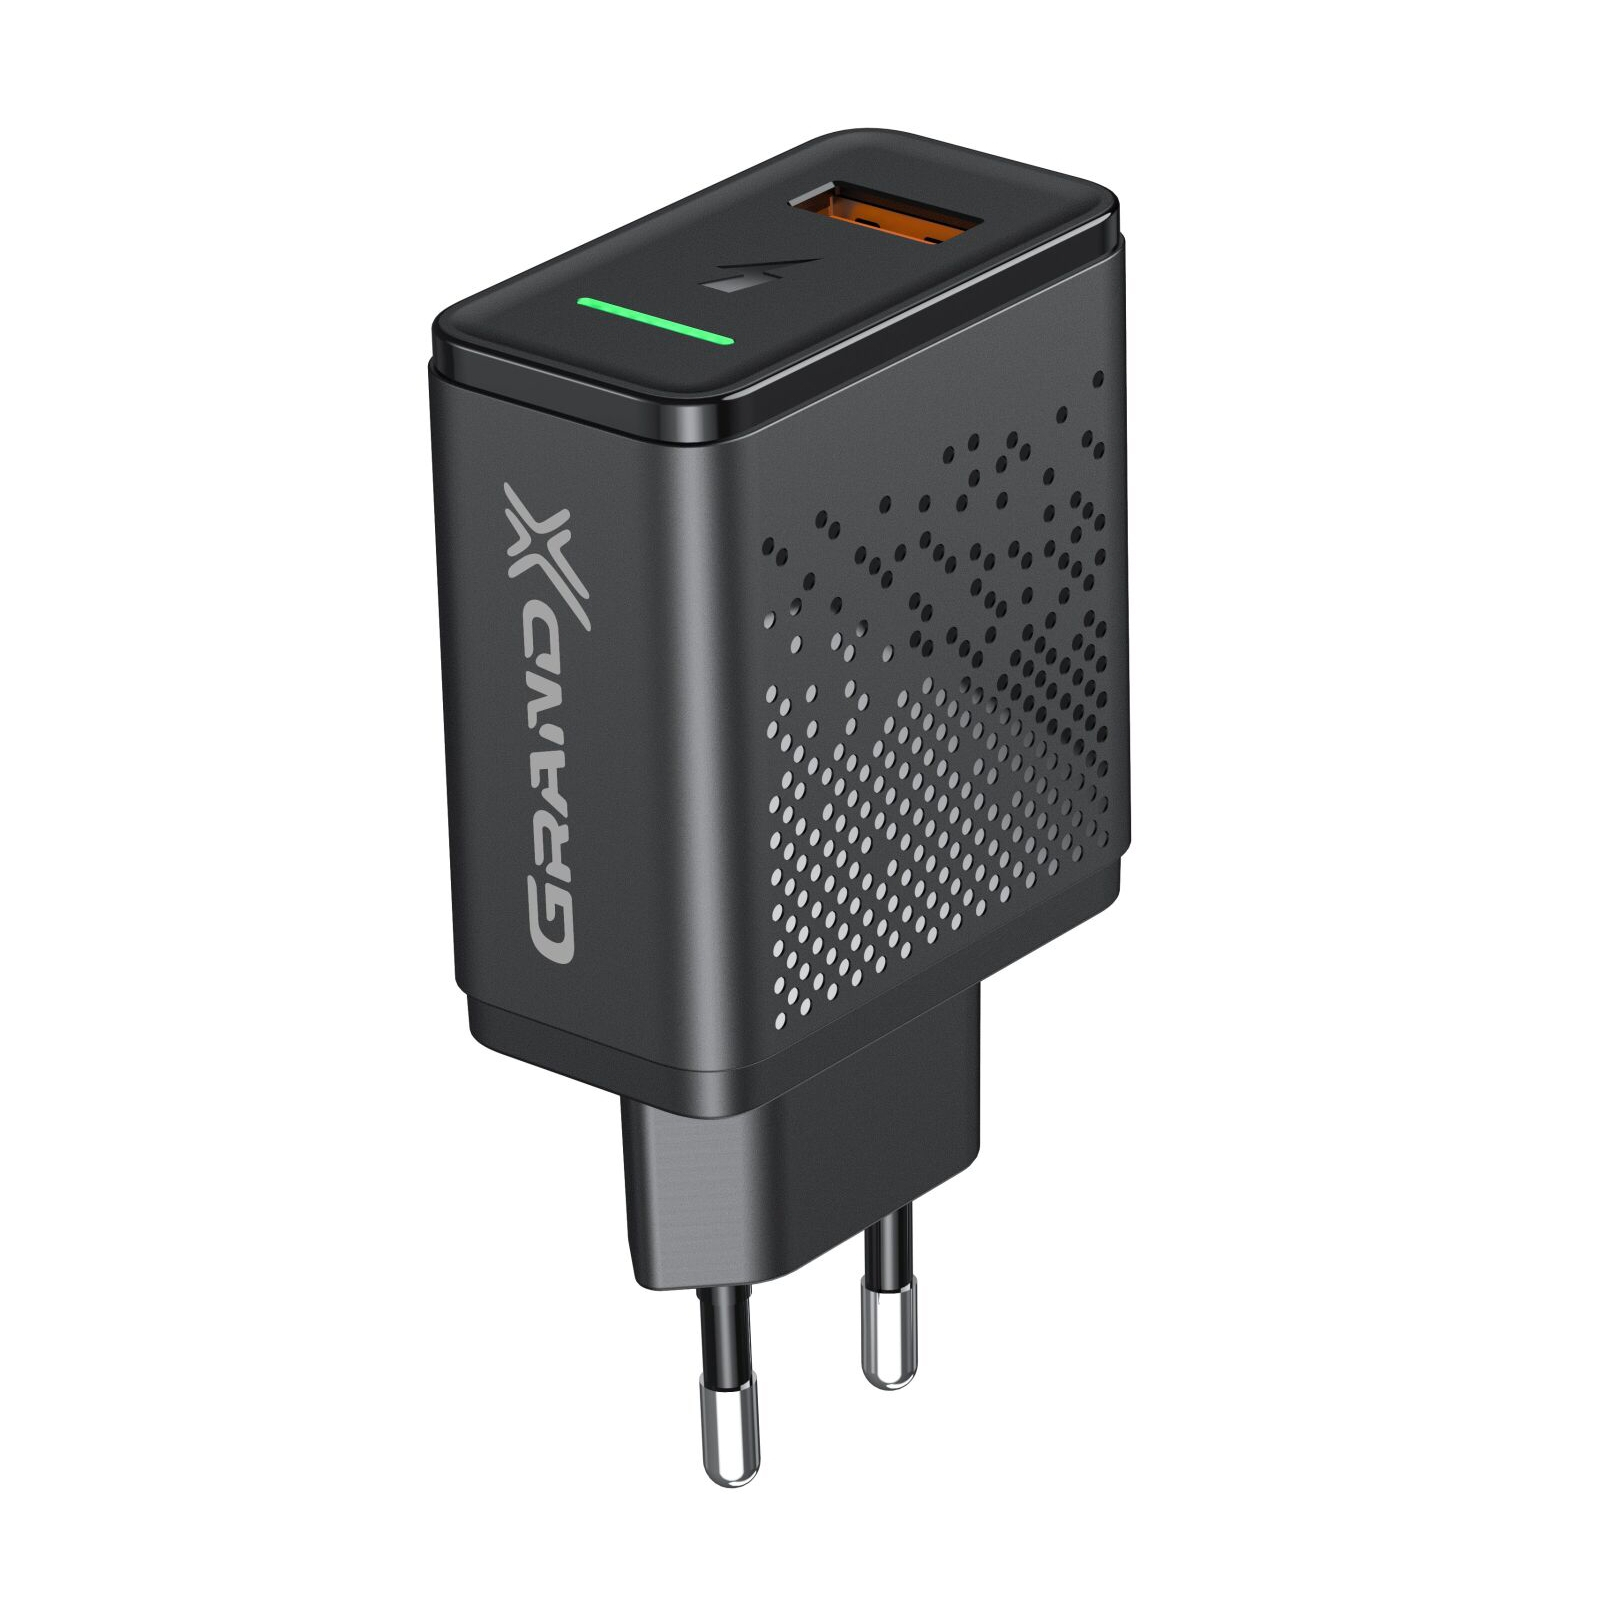 Зарядное устройство Grand-X Fast Charge 5-в-1 QC 3.0, AFC, SCP,FCP, VOOC, 1 USB 22.5W (CH-850) изображение 4